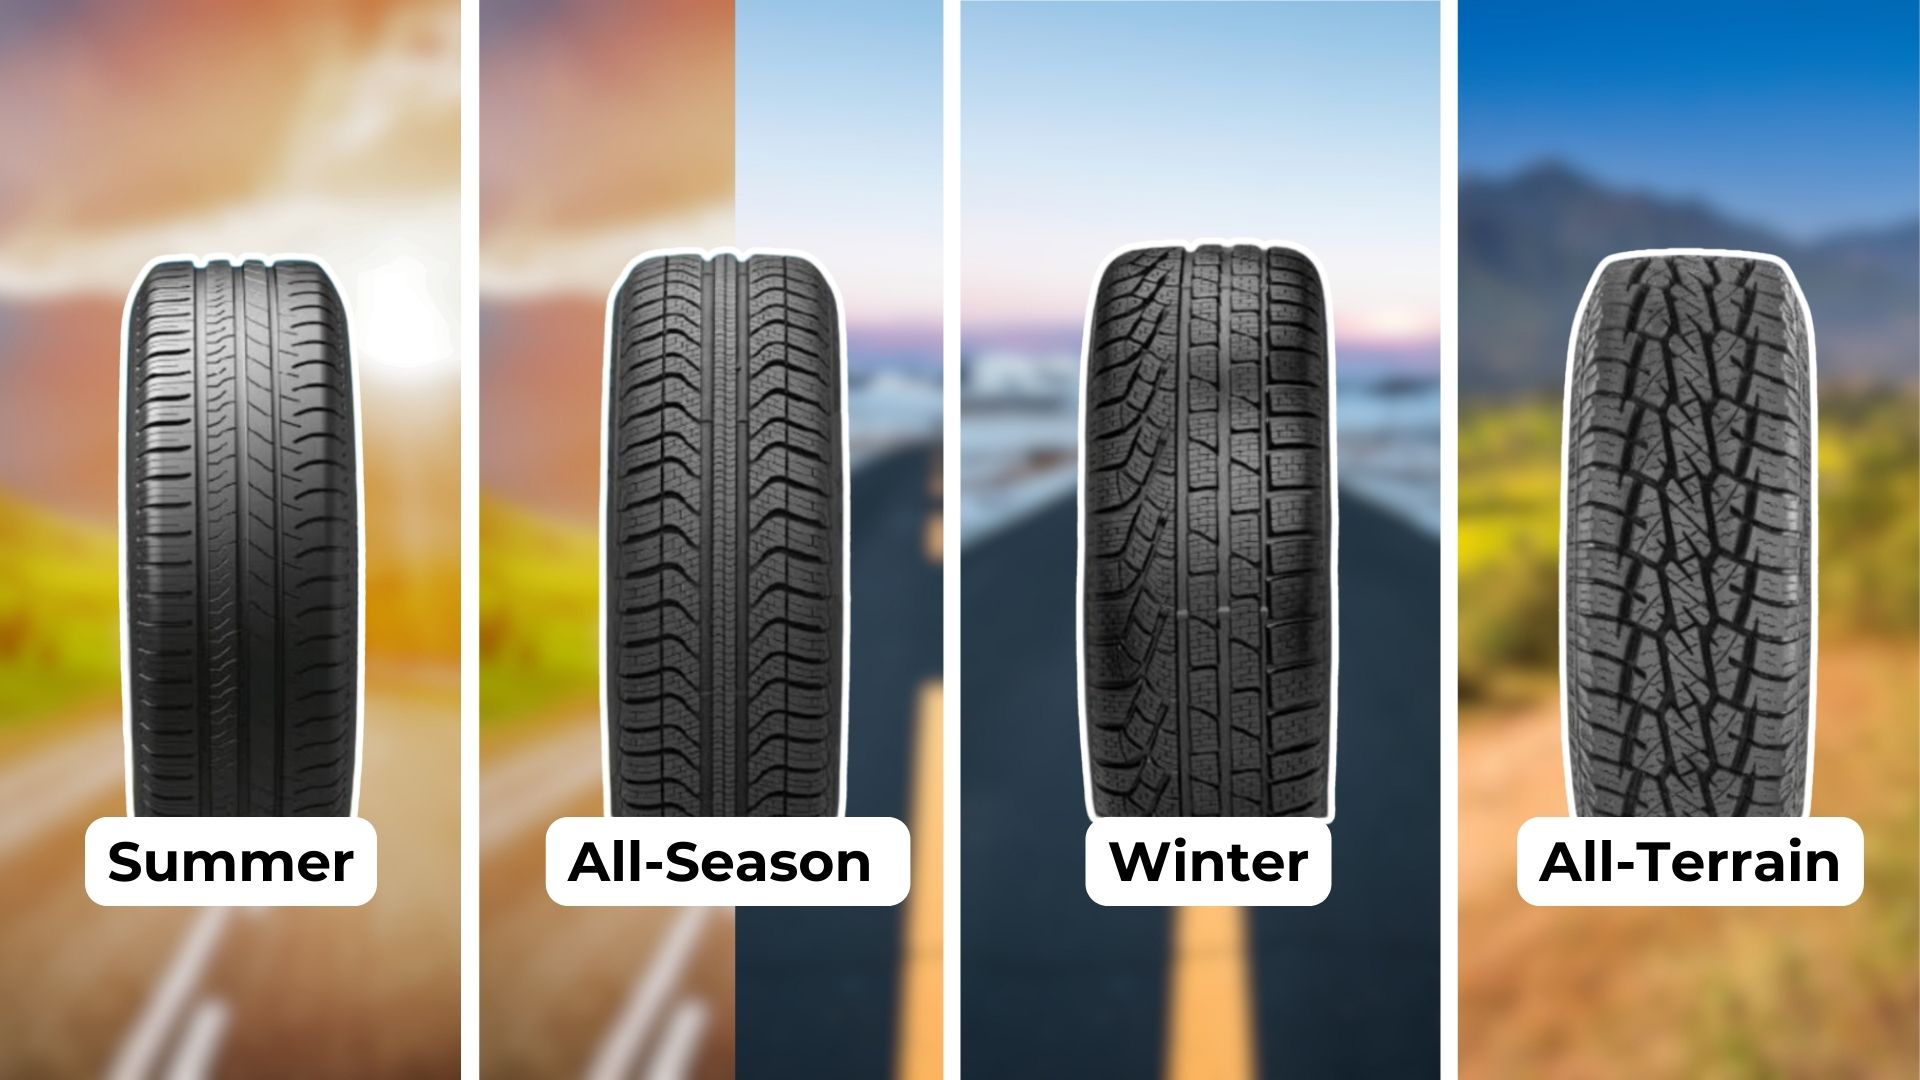 Types of Tires- Seasonal Variations